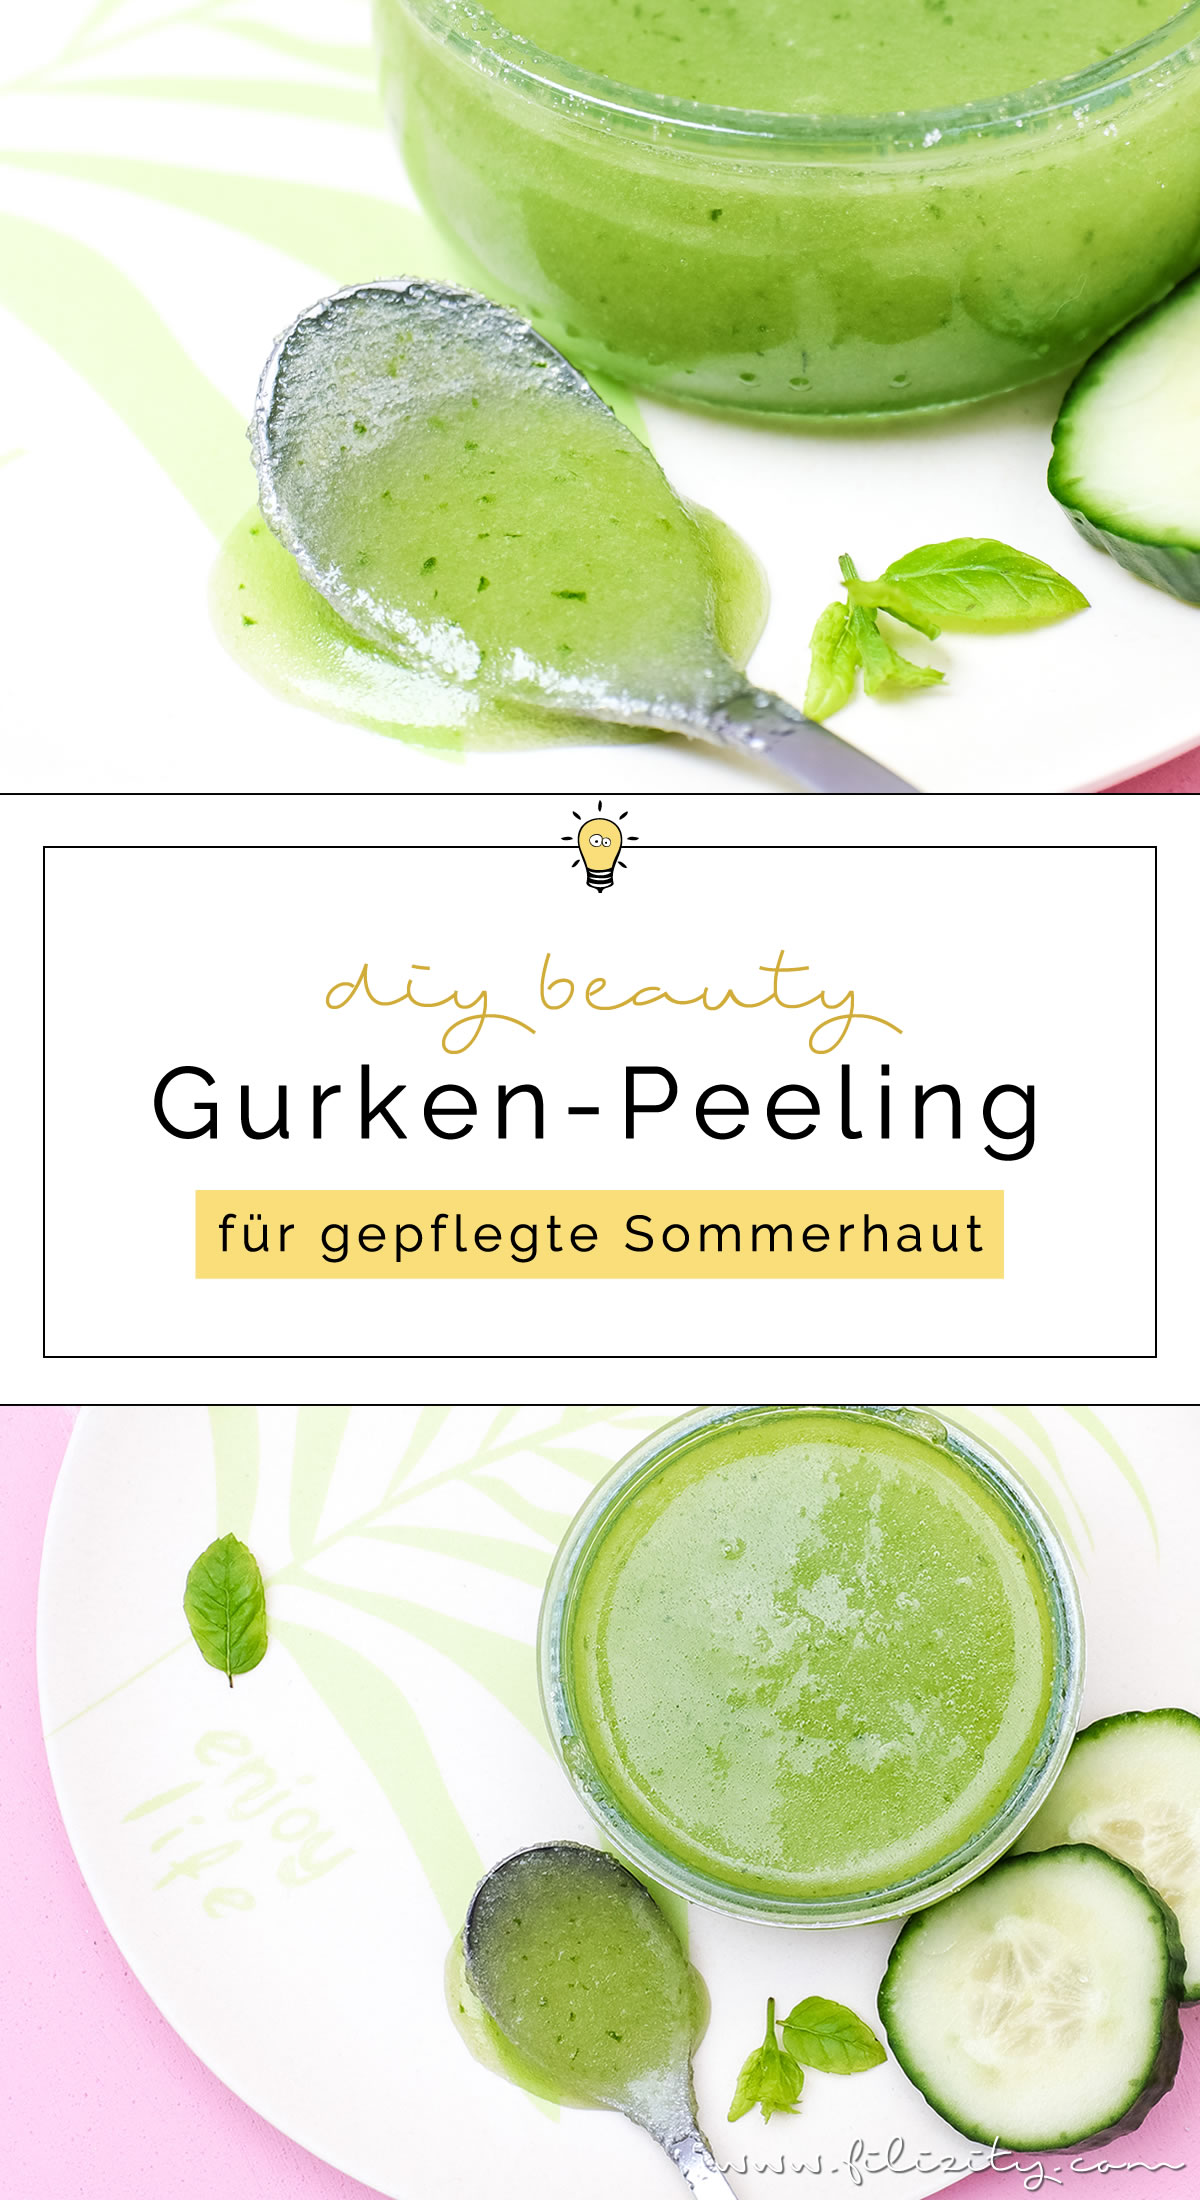 DIY Gurken-Peeling selber machen - Natürliche Hautpflege selber anmischen | Filizity.com | Beauty- & DIY-Blog aus dem Rheinland